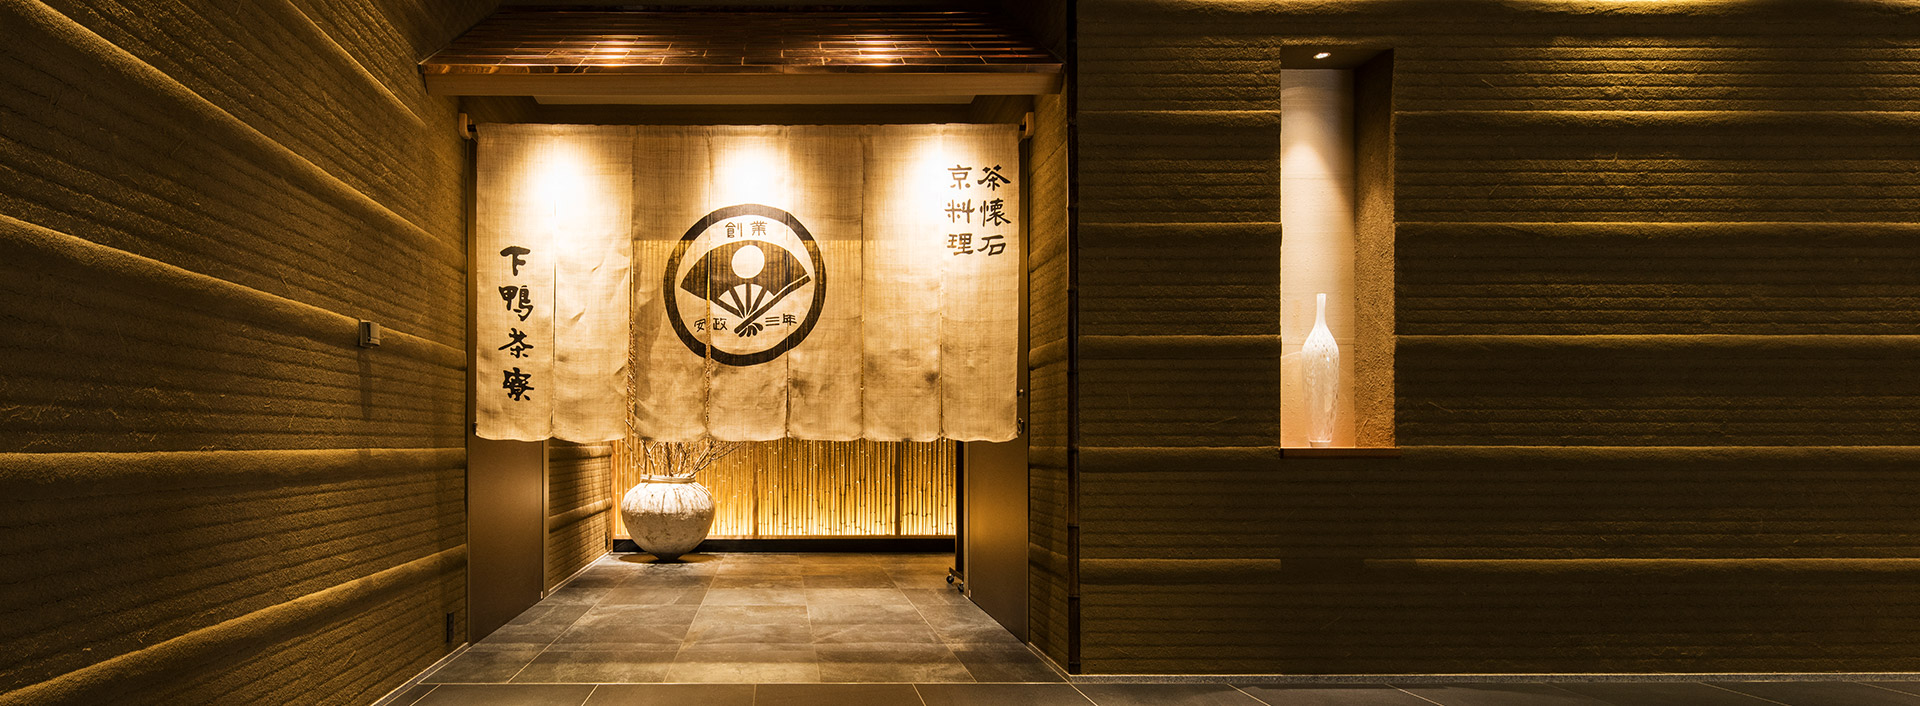 日日本怀石料理餐厅 京都 下鴨茶寮 北之离